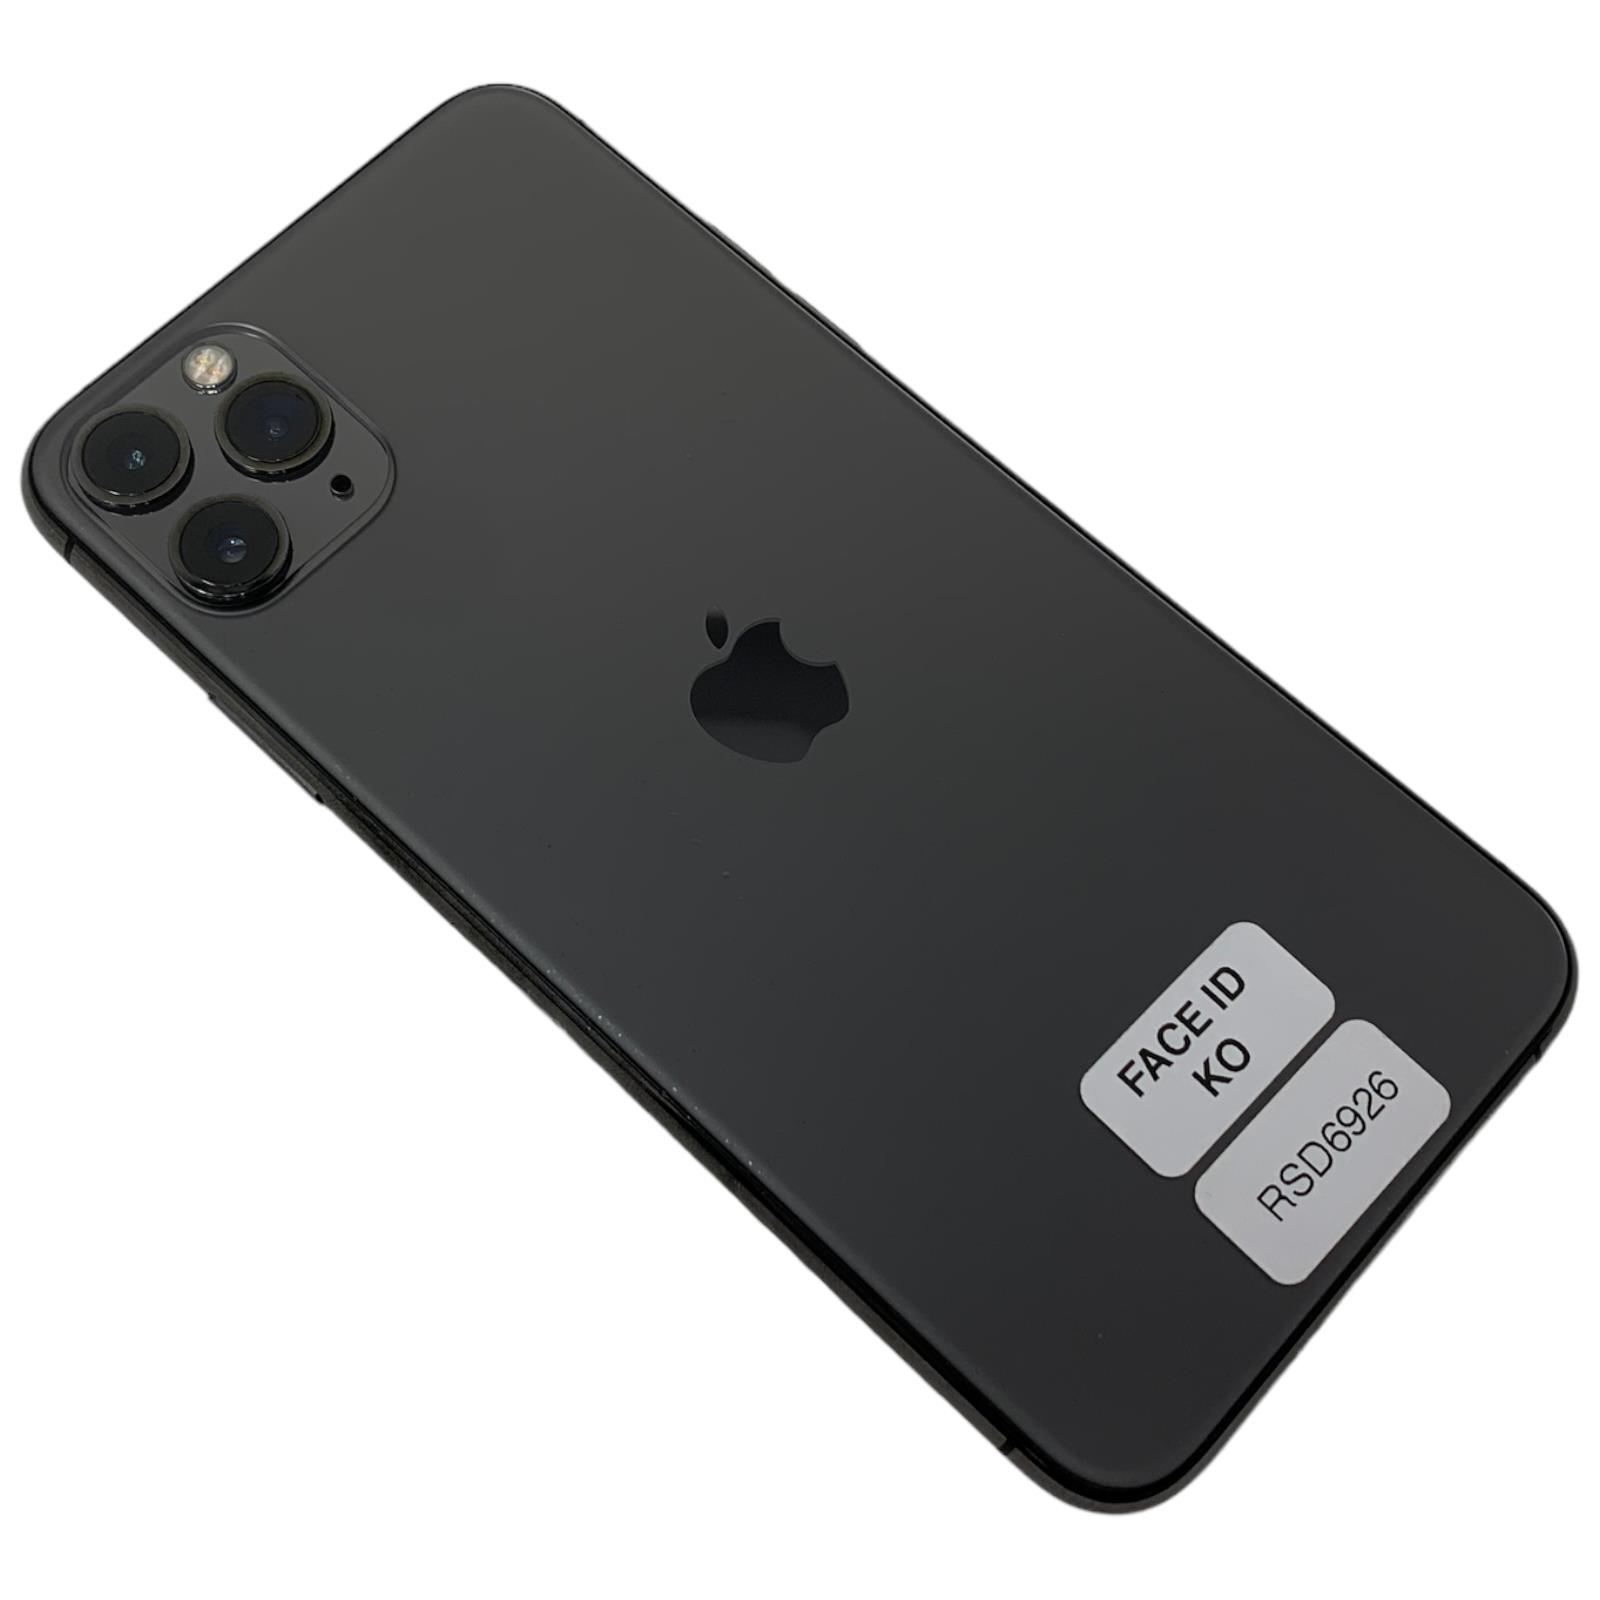 RSD6926 Apple iPhone 11 Pro Max 64Gb GR.A Gar.12M Fattura